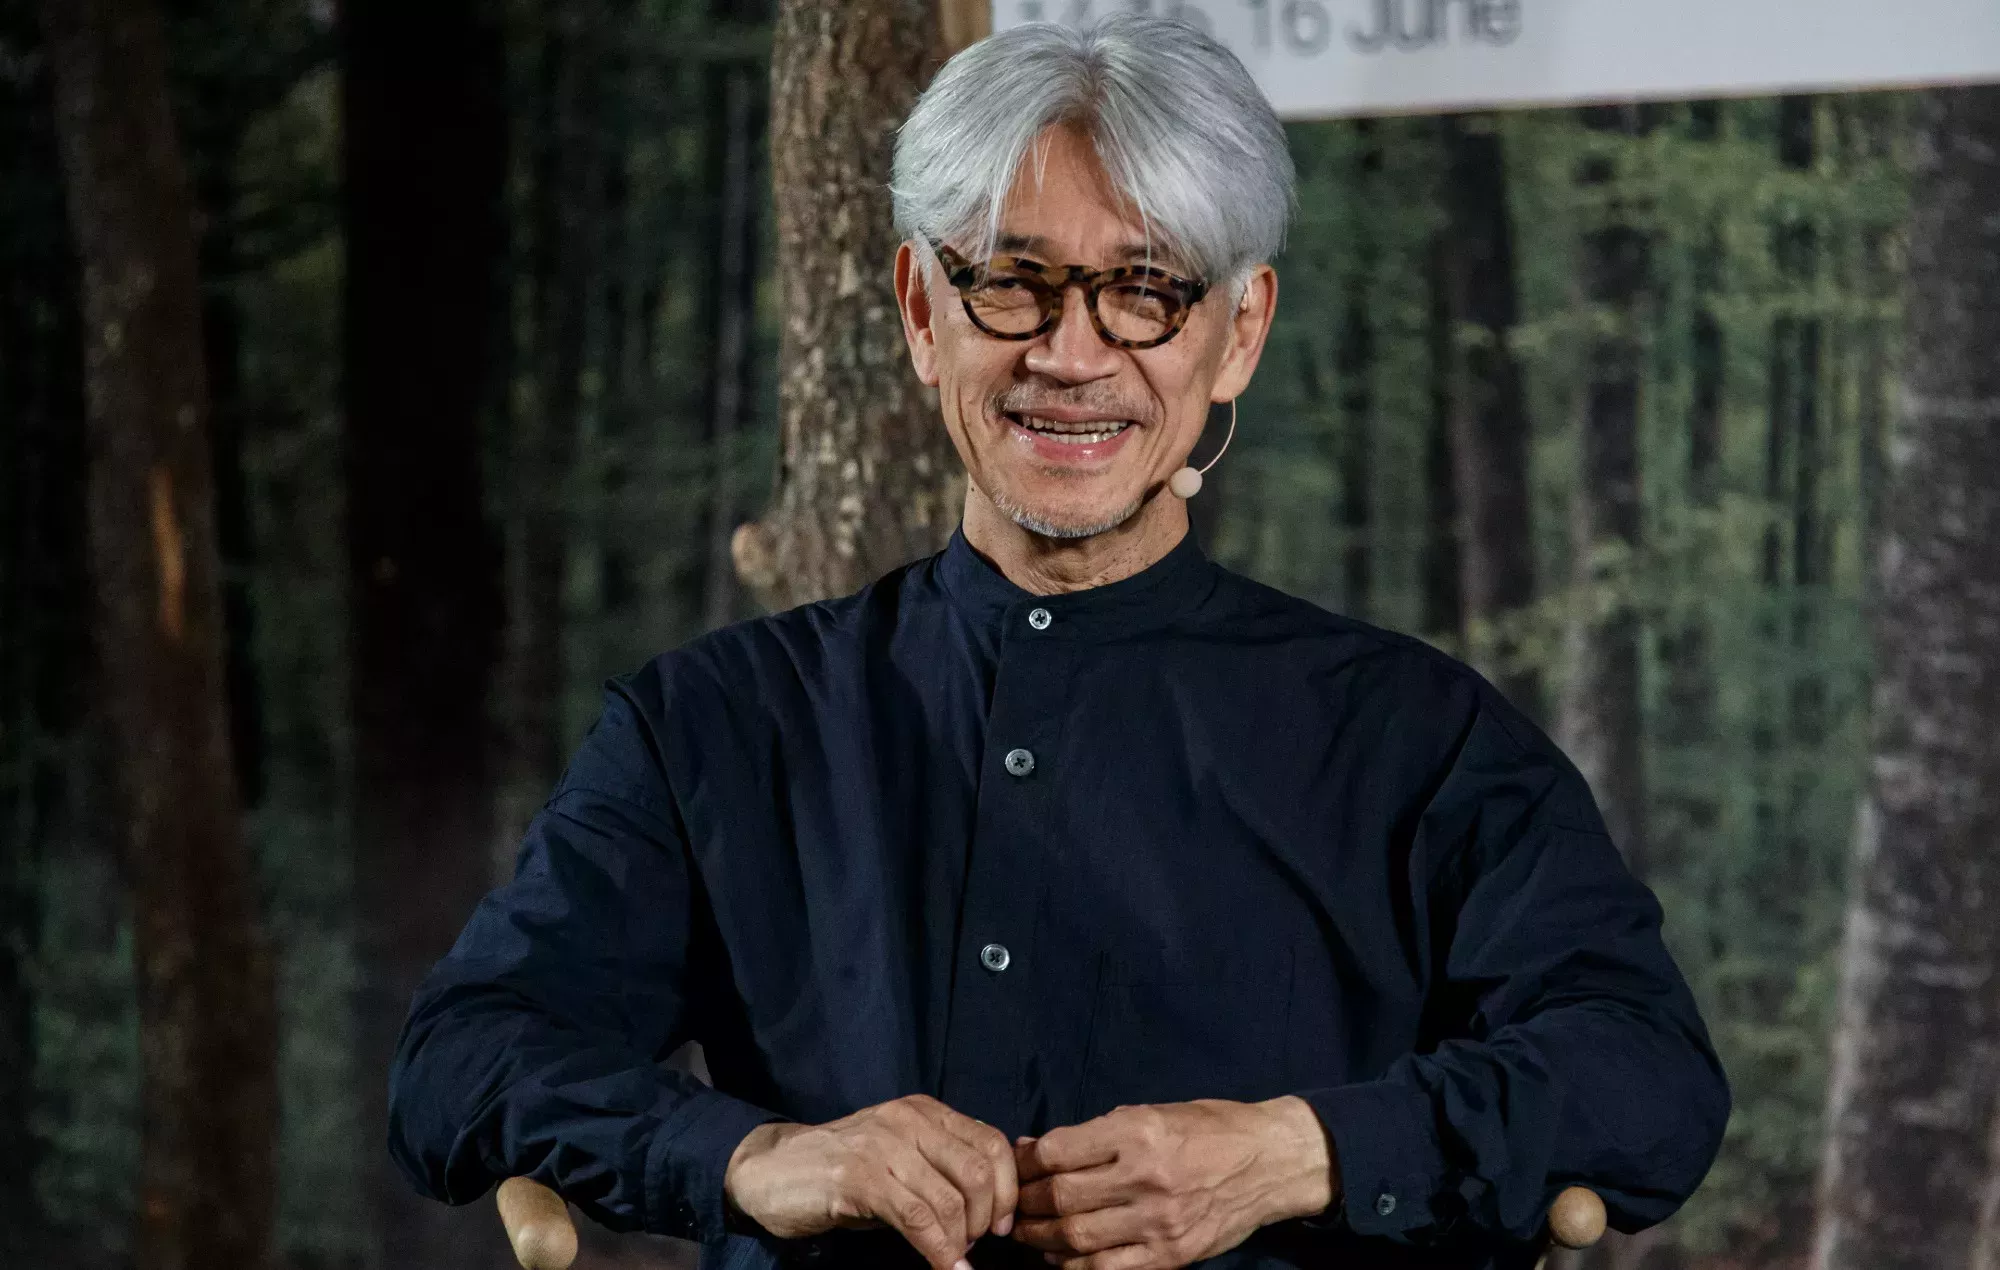 El compositor pionero Ryuichi Sakamoto ha fallecido a los 71 años de edad